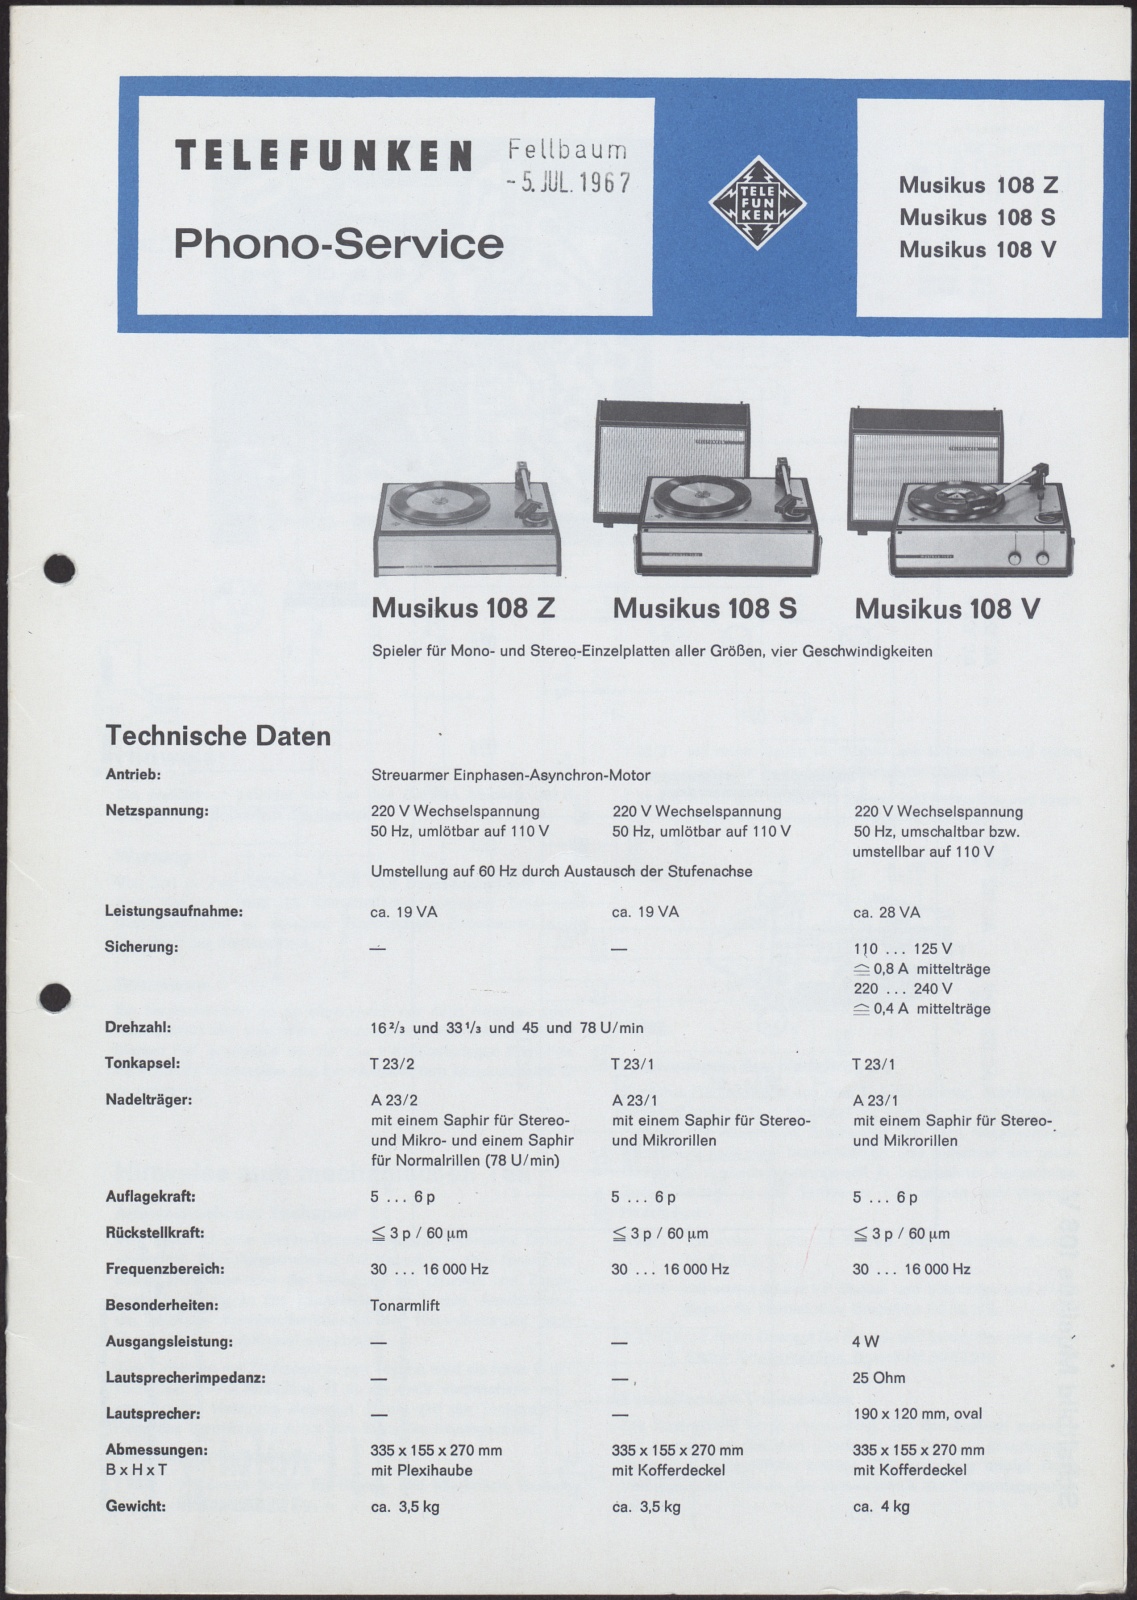 Bedienungsanleitung: Telefunken Phono-Service Musikus 108 Z, Musikus 108 S, Musikus 108 V (Stiftung Deutsches Technikmuseum Berlin CC0)